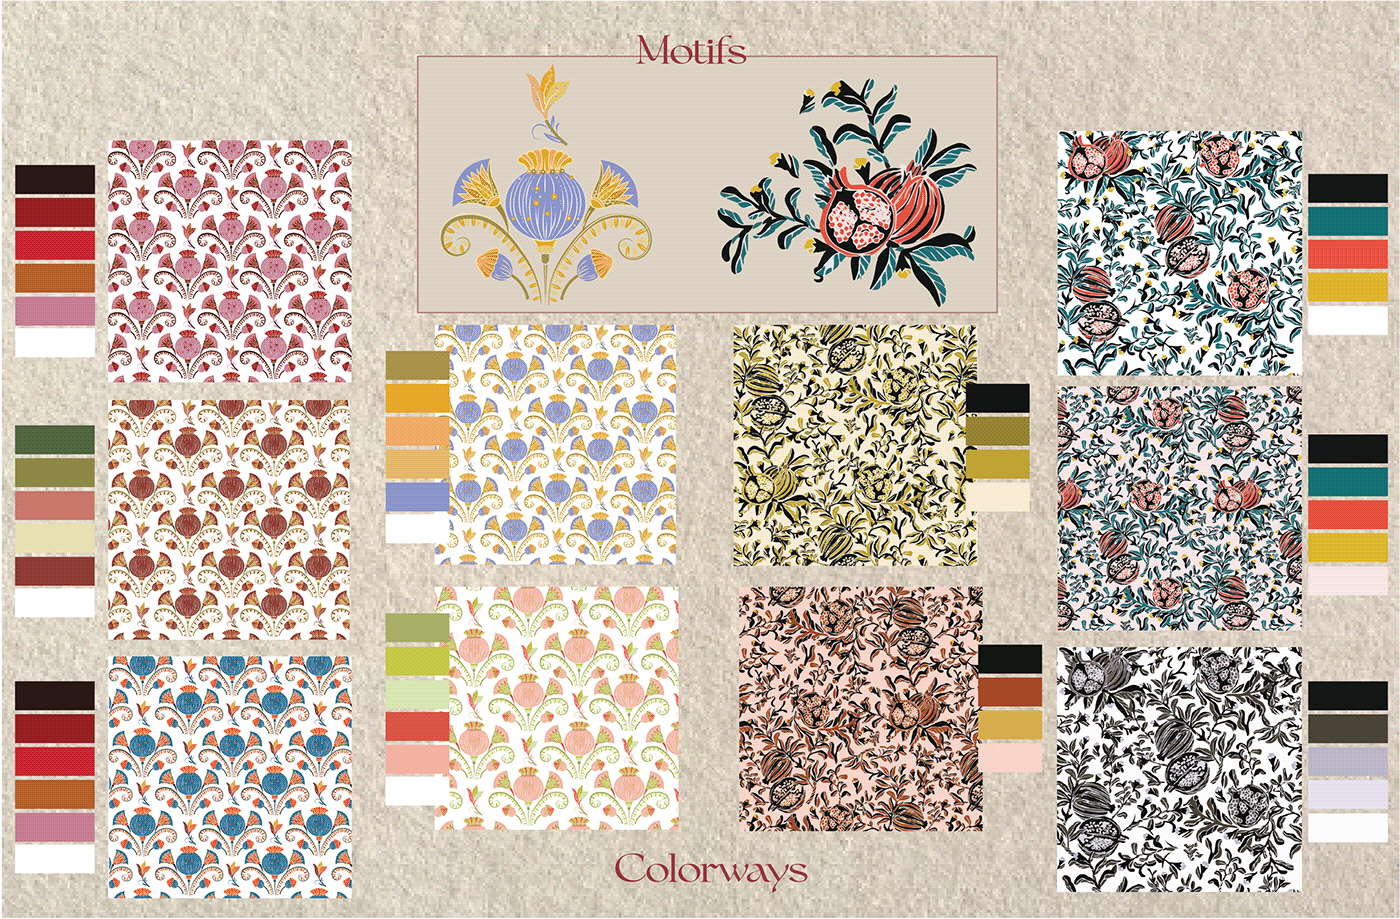 textile design  textile design portfolio weaving pattern print portfolio Fashion  surface pattern design fashion portfolio